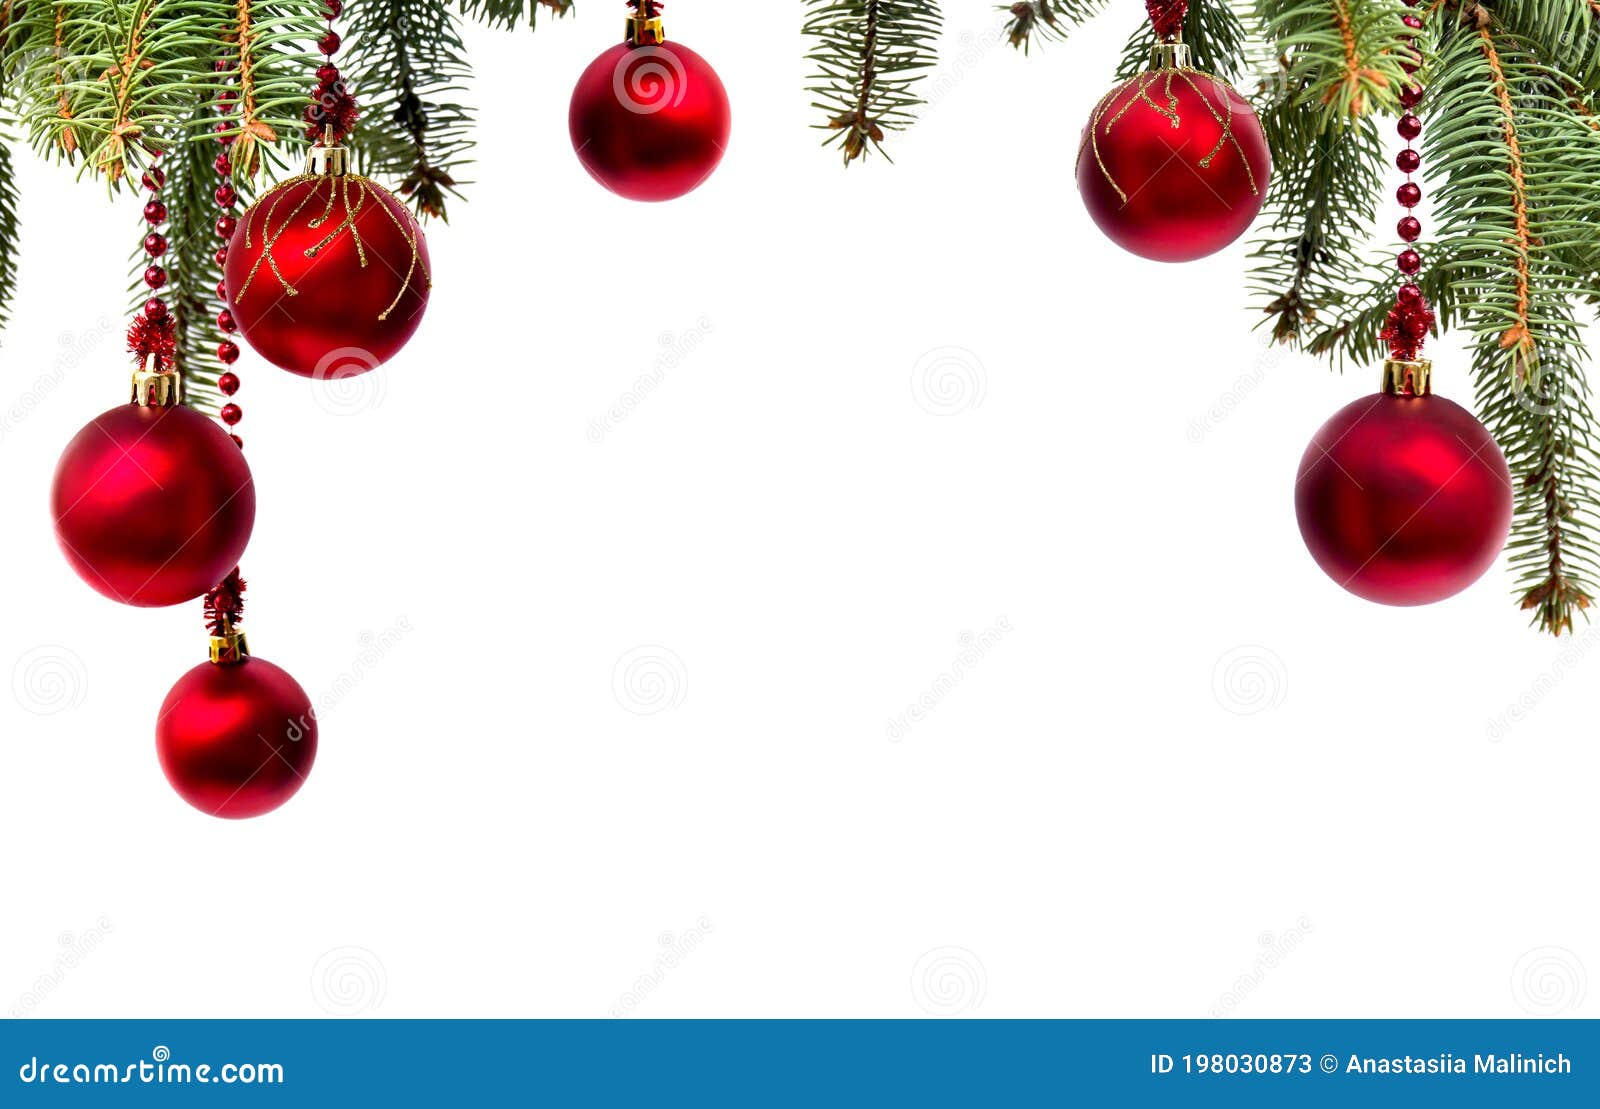 Chiếc quả cầu đỏ treo trên cây Giáng sinh thật đẹp và lung linh phải không nào? Hãy khám phá thêm nhiều hình ảnh liên quan để tìm kiếm cảm hứng trang trí cho cây Giáng sinh đẹp nhất bên gia đình.